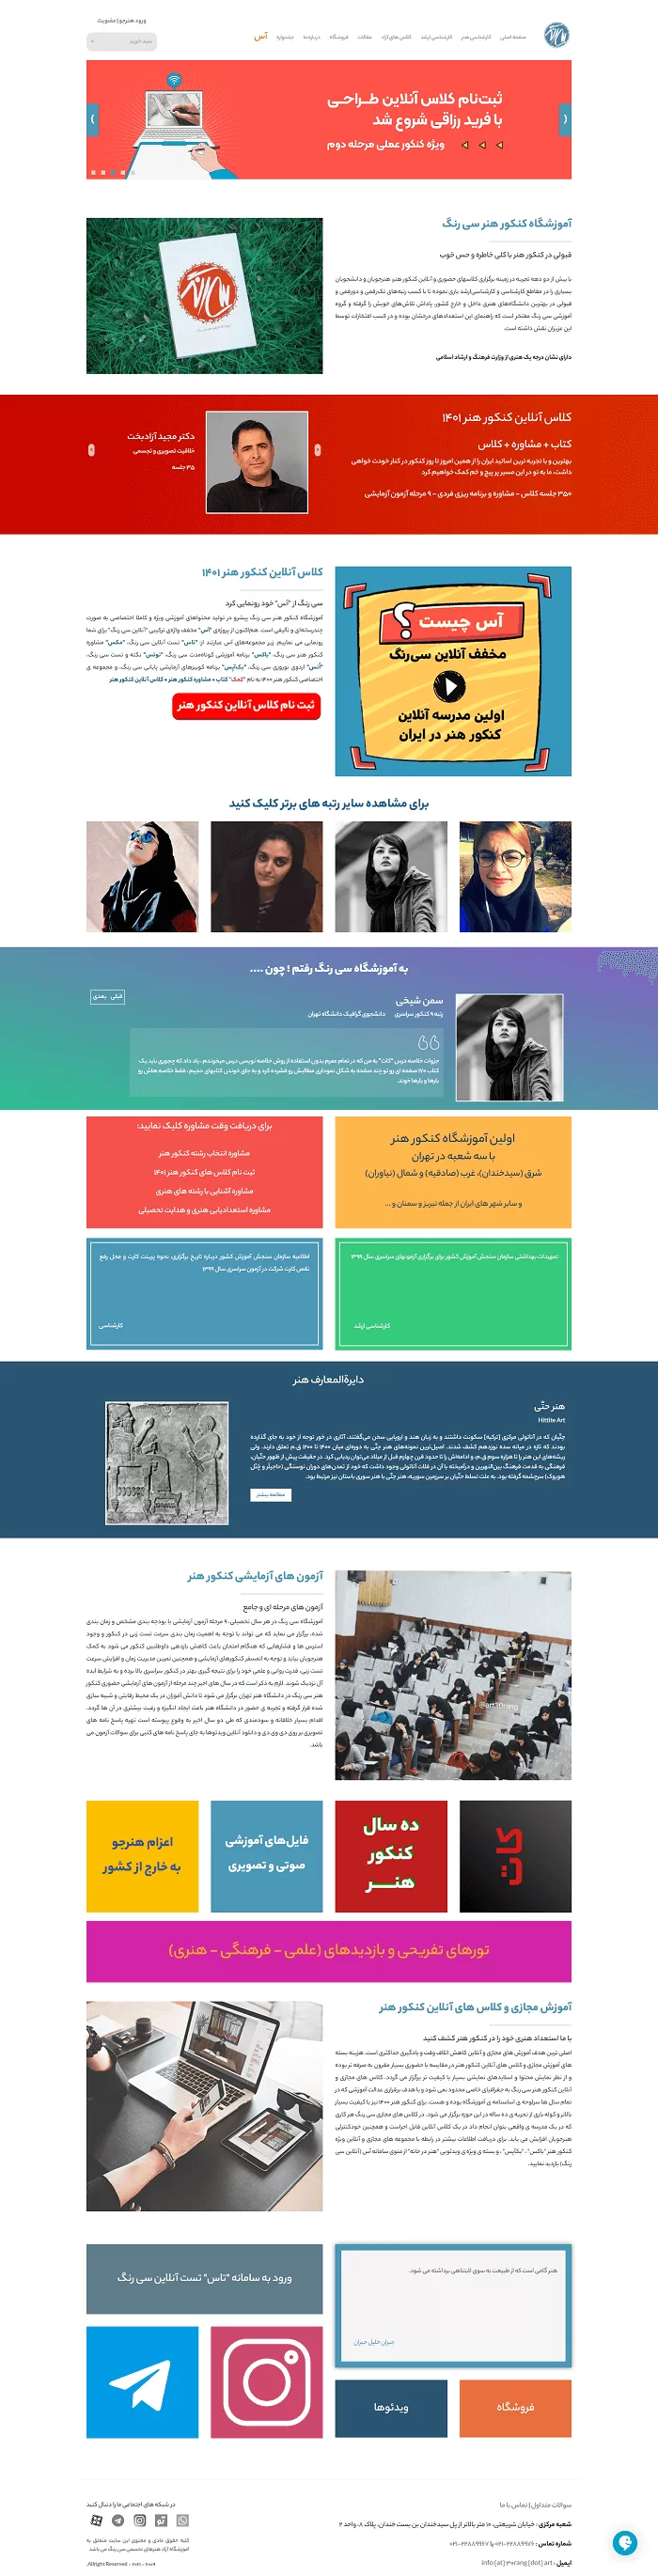 طراحی سایت آموزشگاه سی رنگ